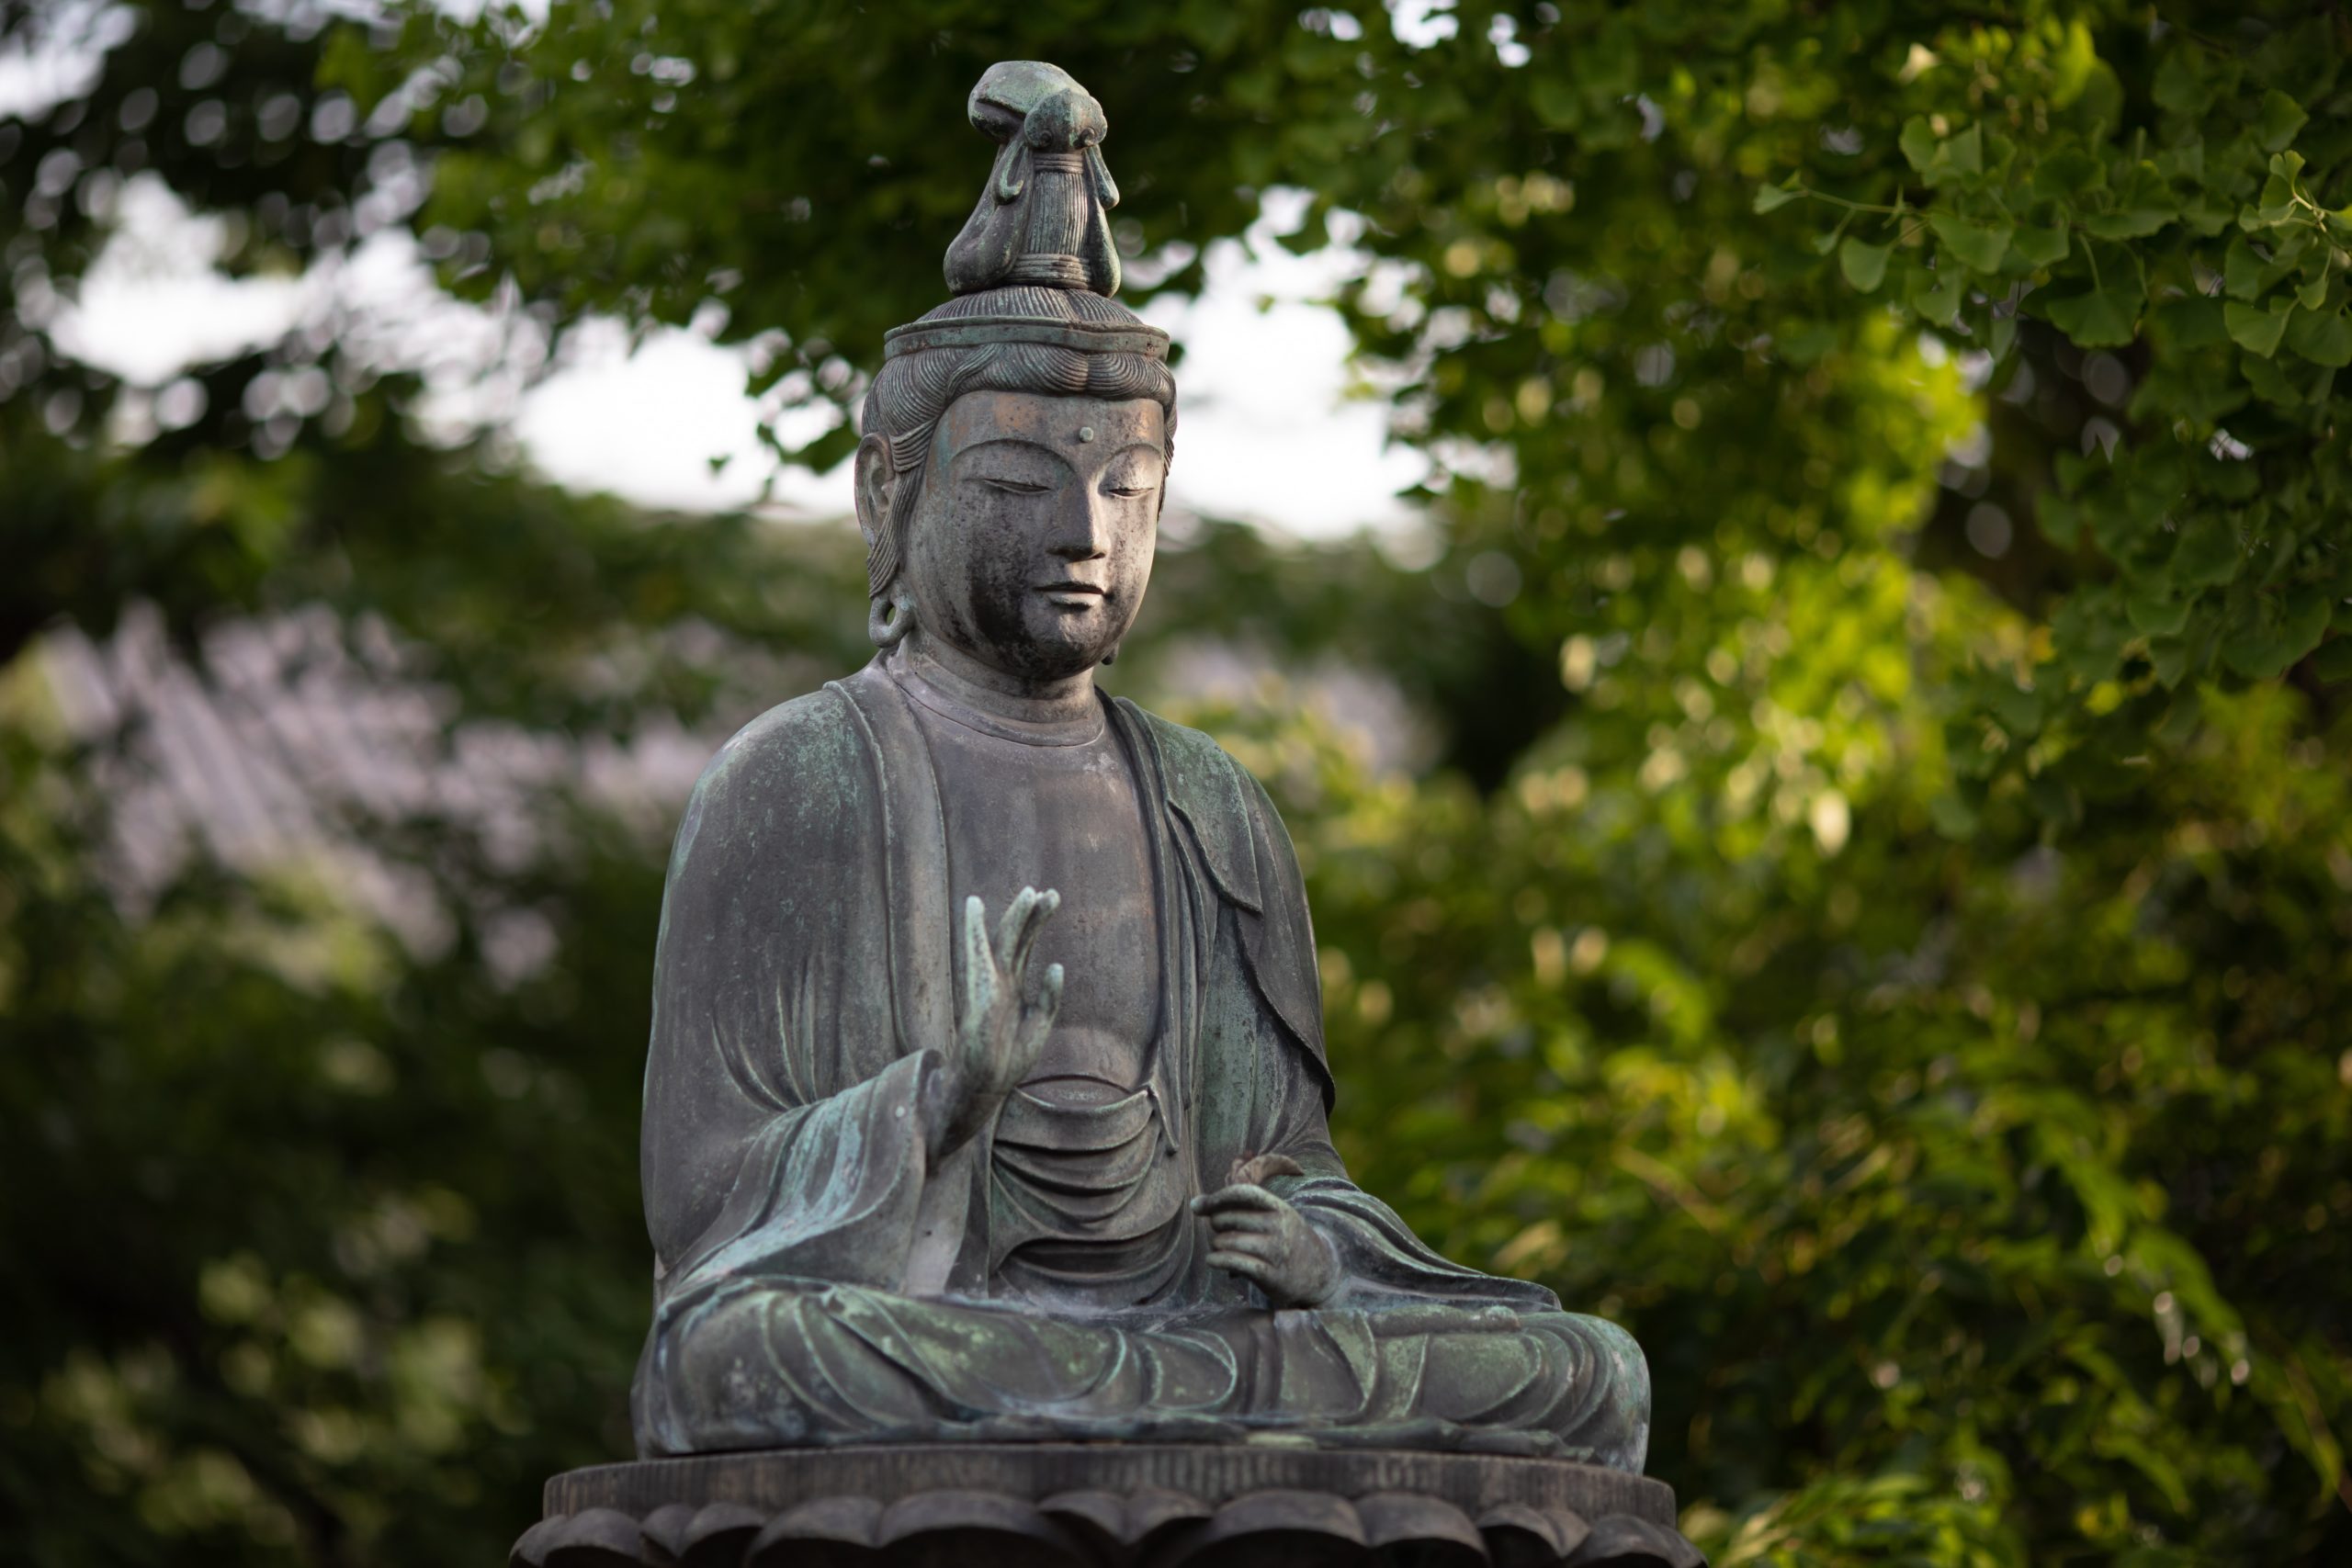 A stone buddha statue.